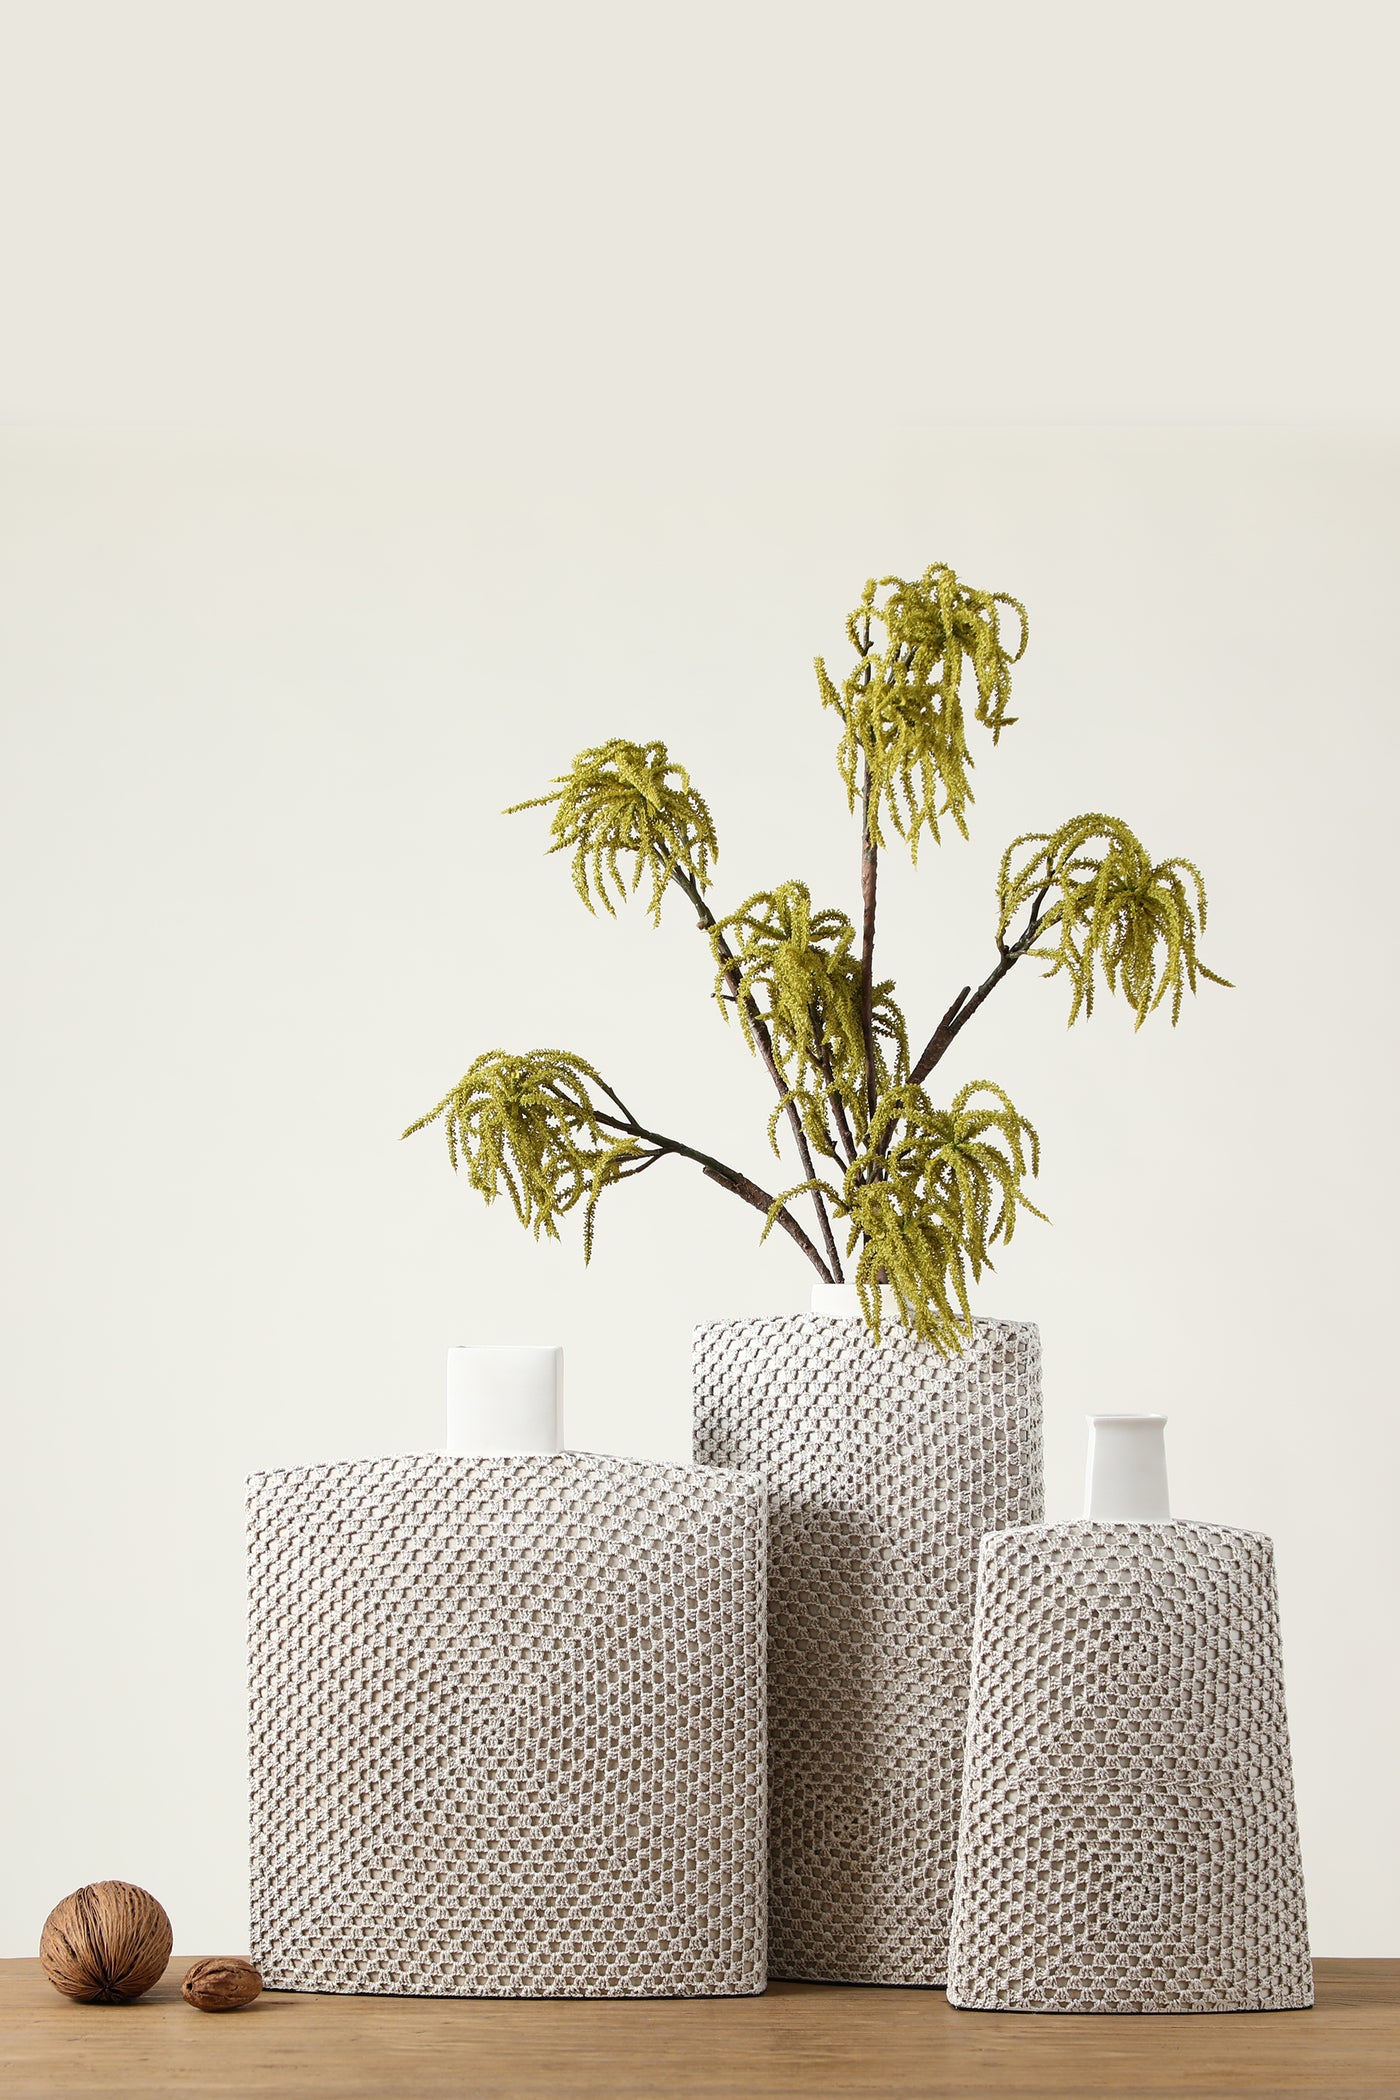 Woven design matt finishing resin flower vase for your home or office decor